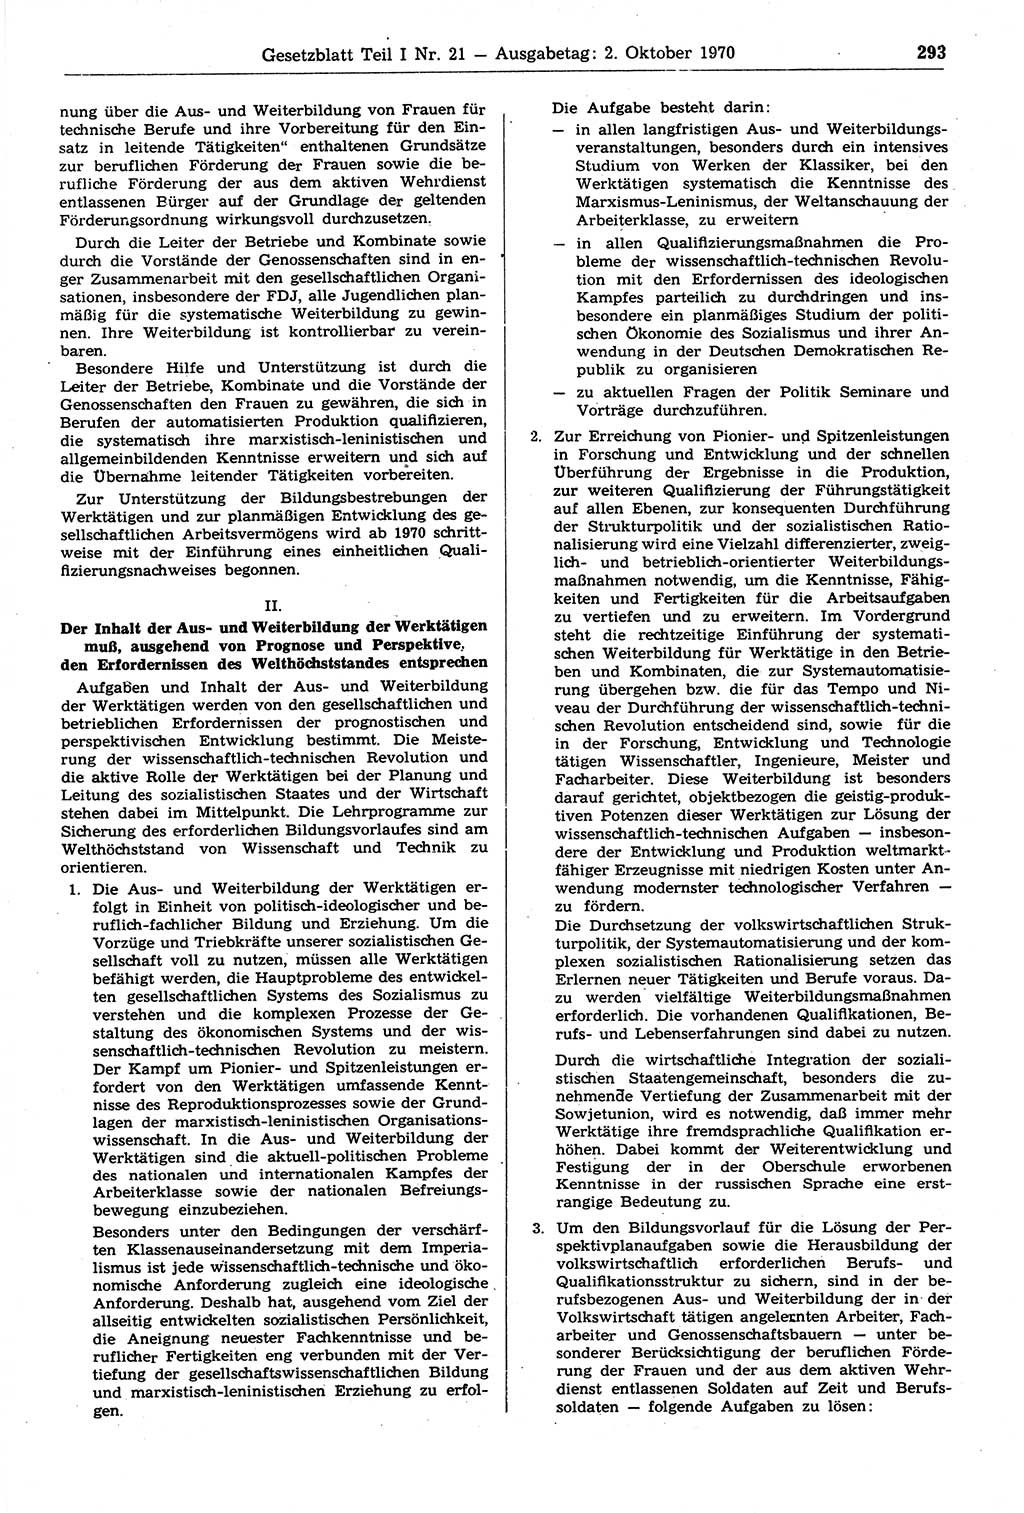 Gesetzblatt (GBl.) der Deutschen Demokratischen Republik (DDR) Teil Ⅰ 1970, Seite 293 (GBl. DDR Ⅰ 1970, S. 293)